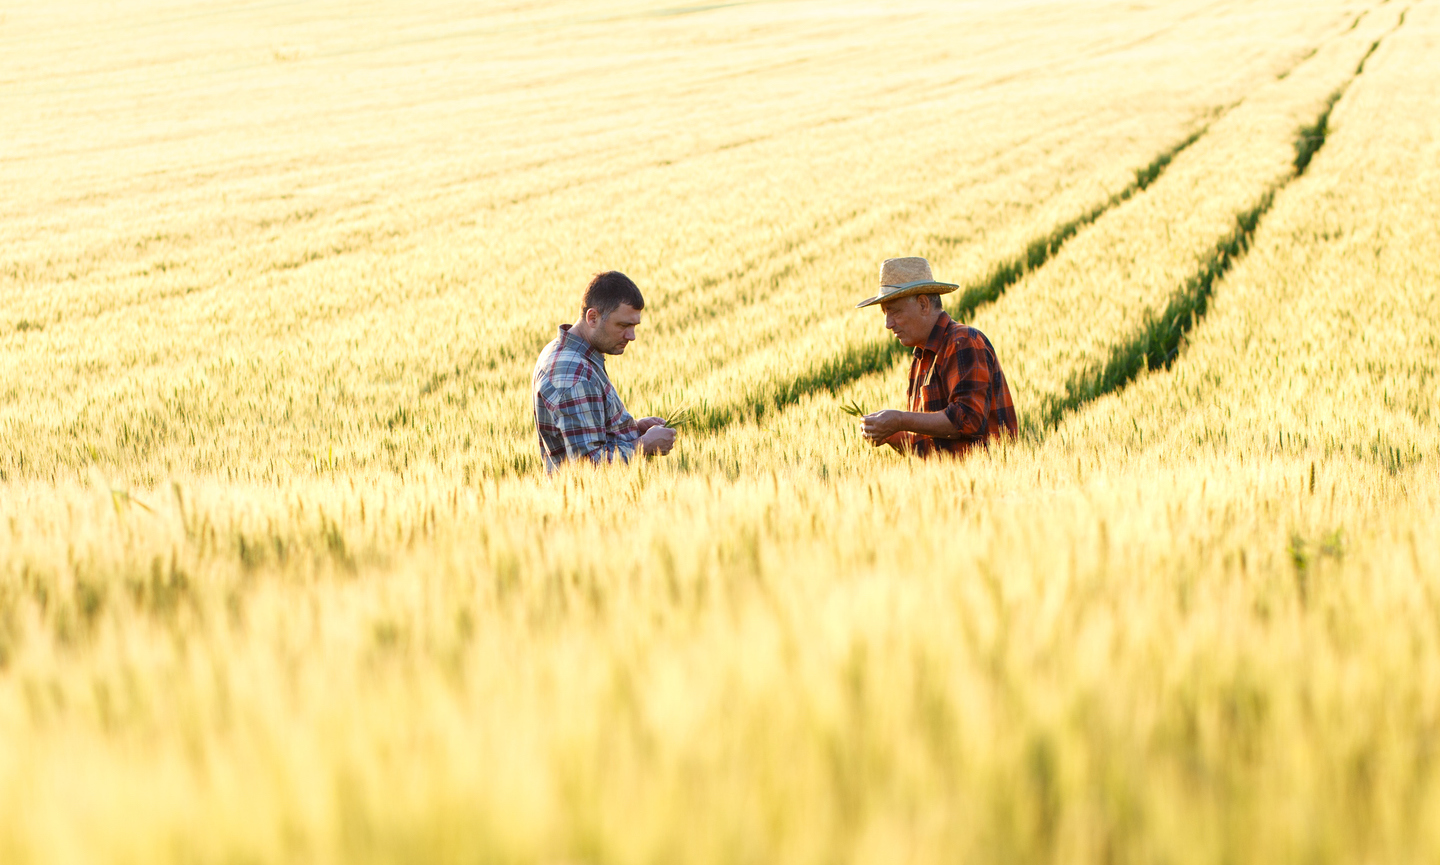 Two farmers in a wheat field.